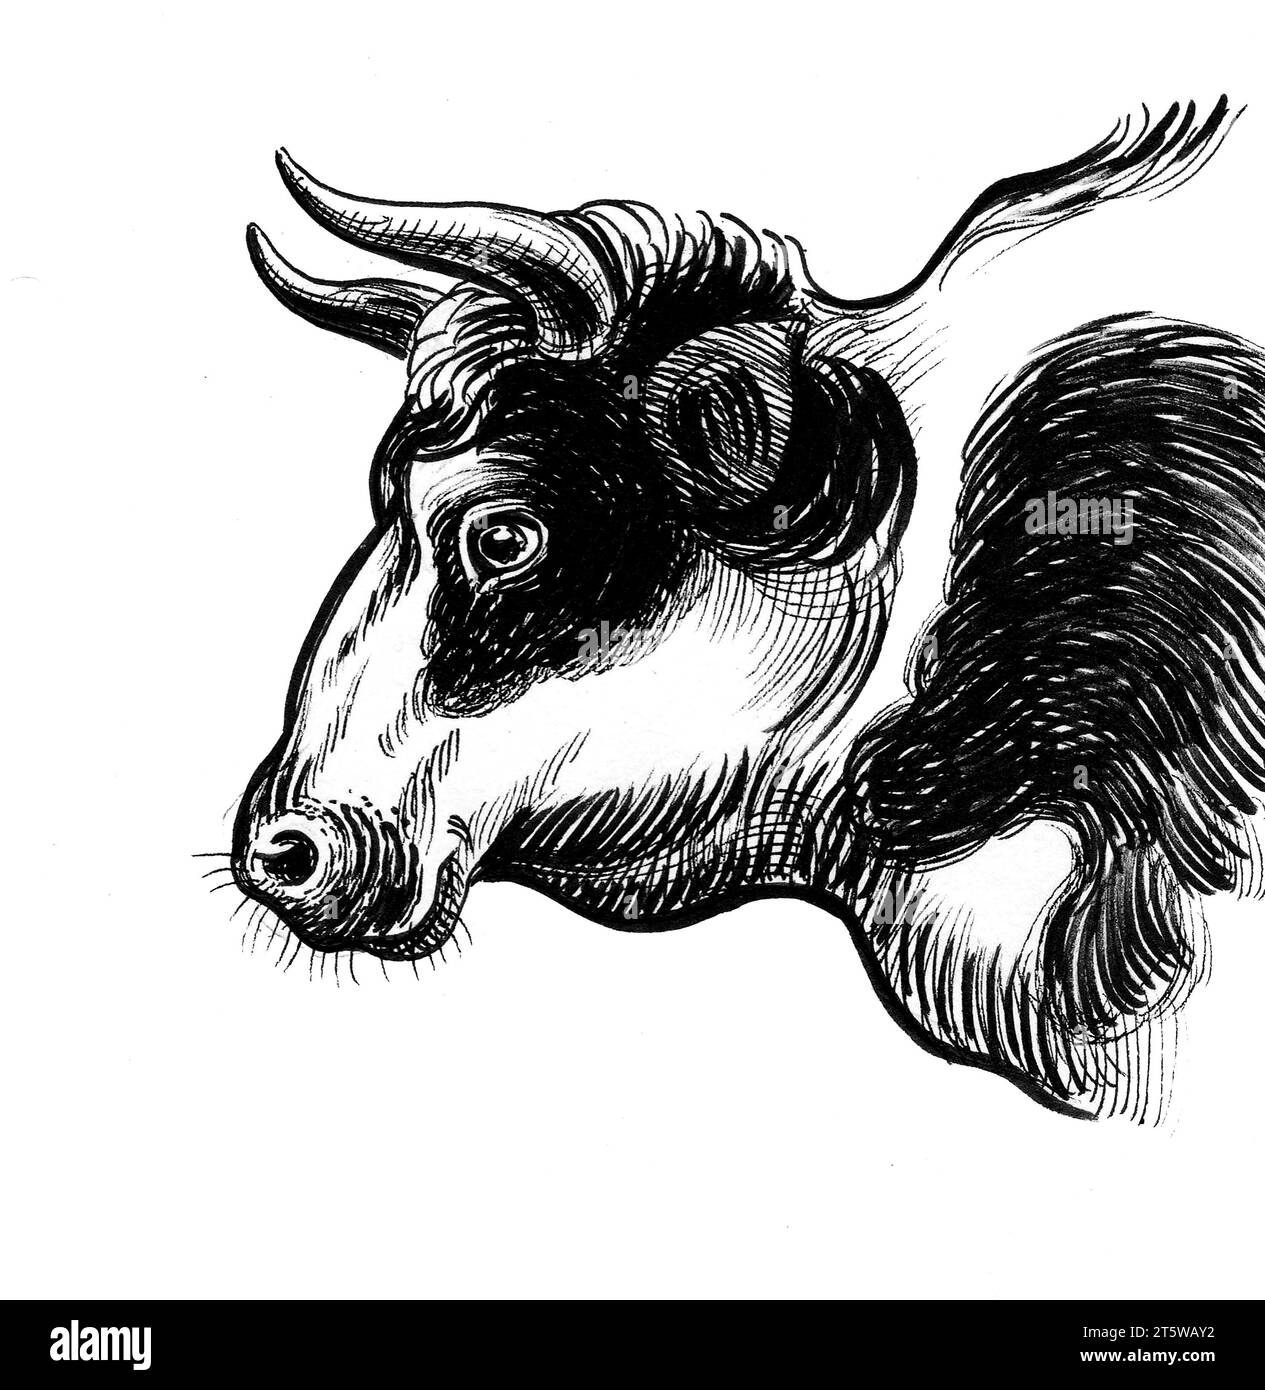 Tête de Bull. Illustration noire et blanche dessinée à la main à l'encre de style rétro Banque D'Images